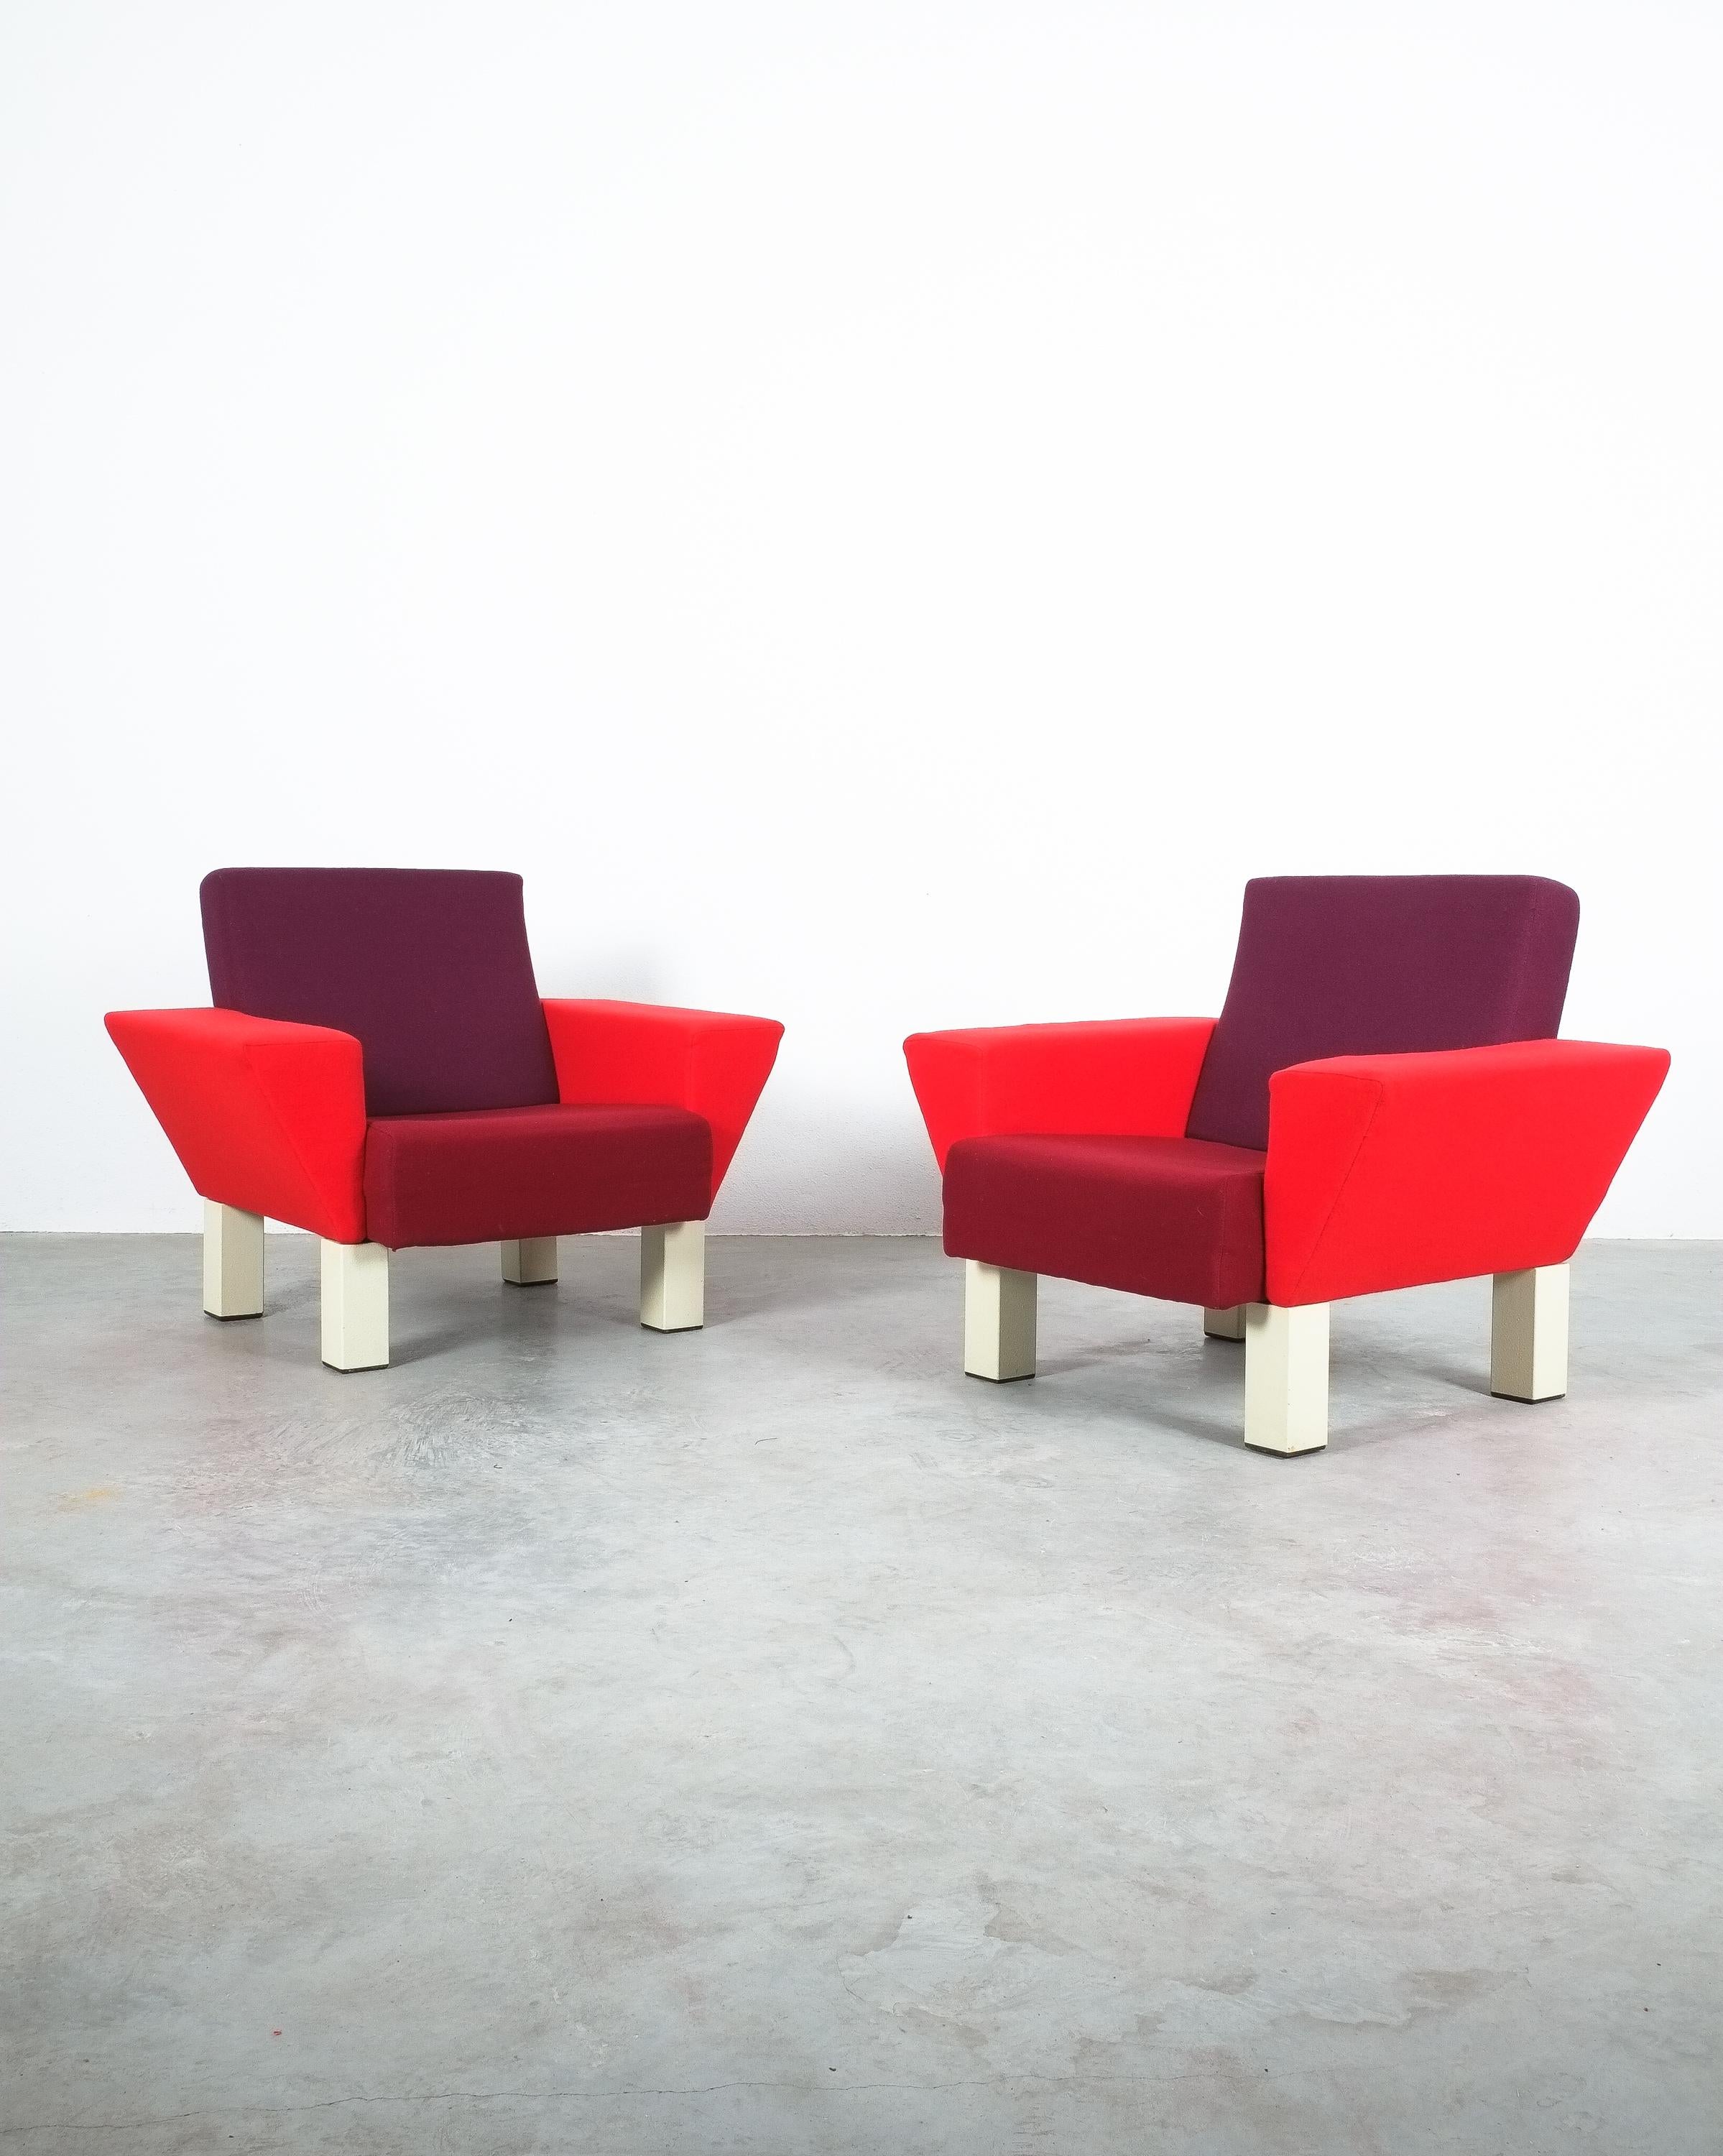 Seltenes Paar Vintage-Sessel 'Westside' von Ettore Sottsass für Knoll, 1983 in sehr gutem Zustand

Ikonische Westseite, 1983 von Ettore Sottsass entworfen. Stilvolle und sehr bequeme übergroße Stühle in 3 verschiedenen Rot- und Violett-Tönen auf